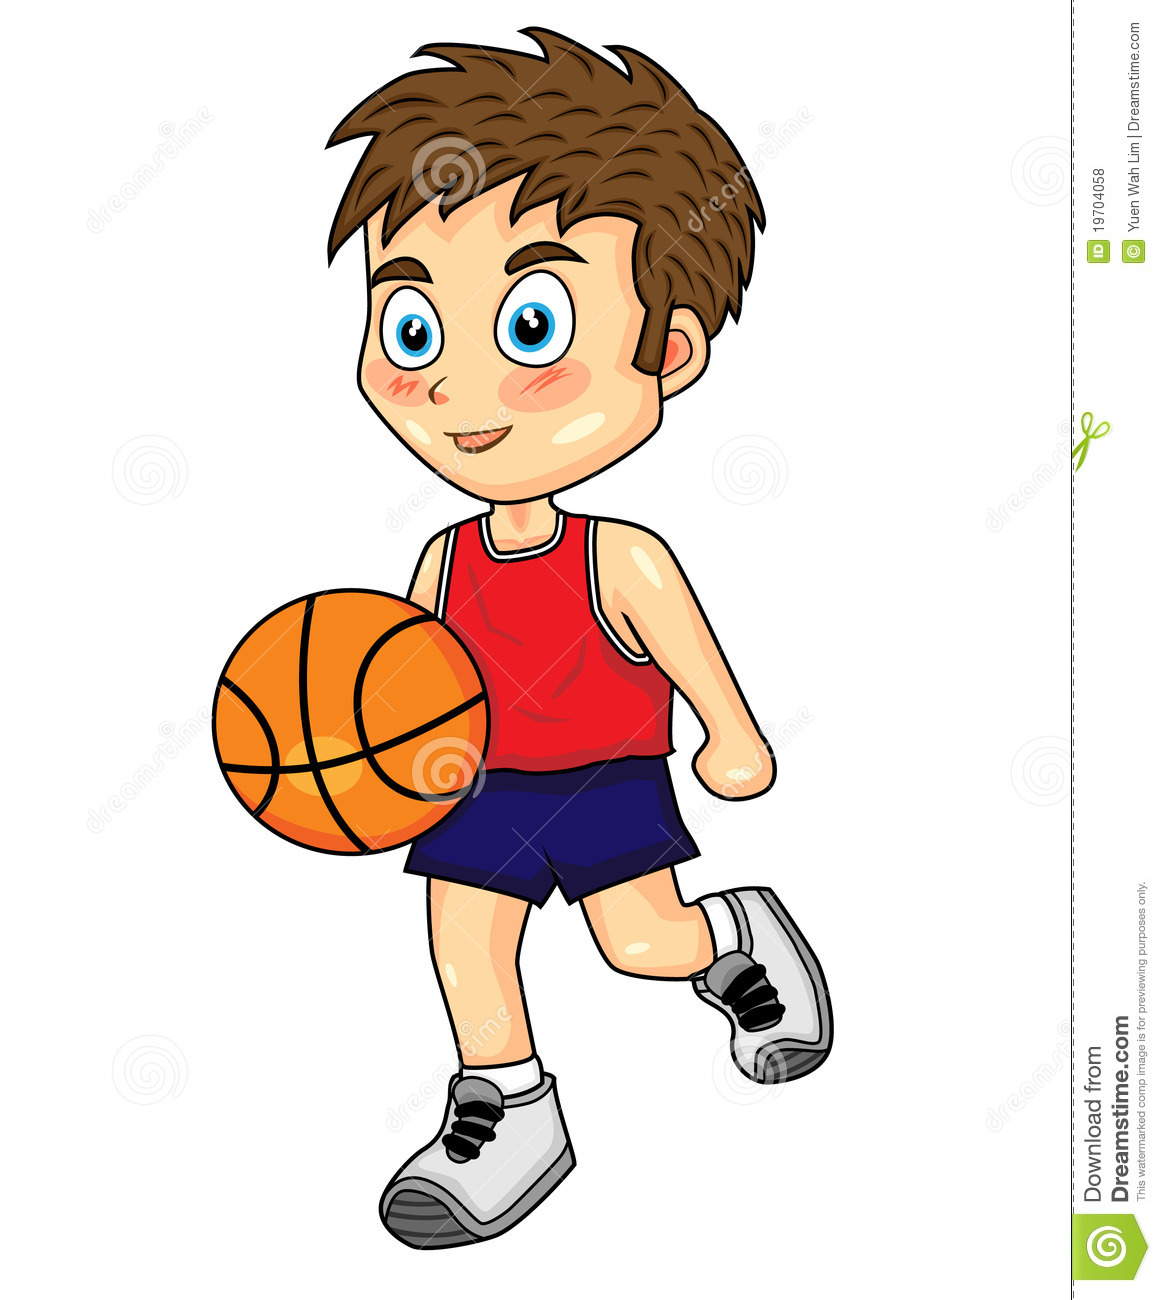 Girl playing basketball.